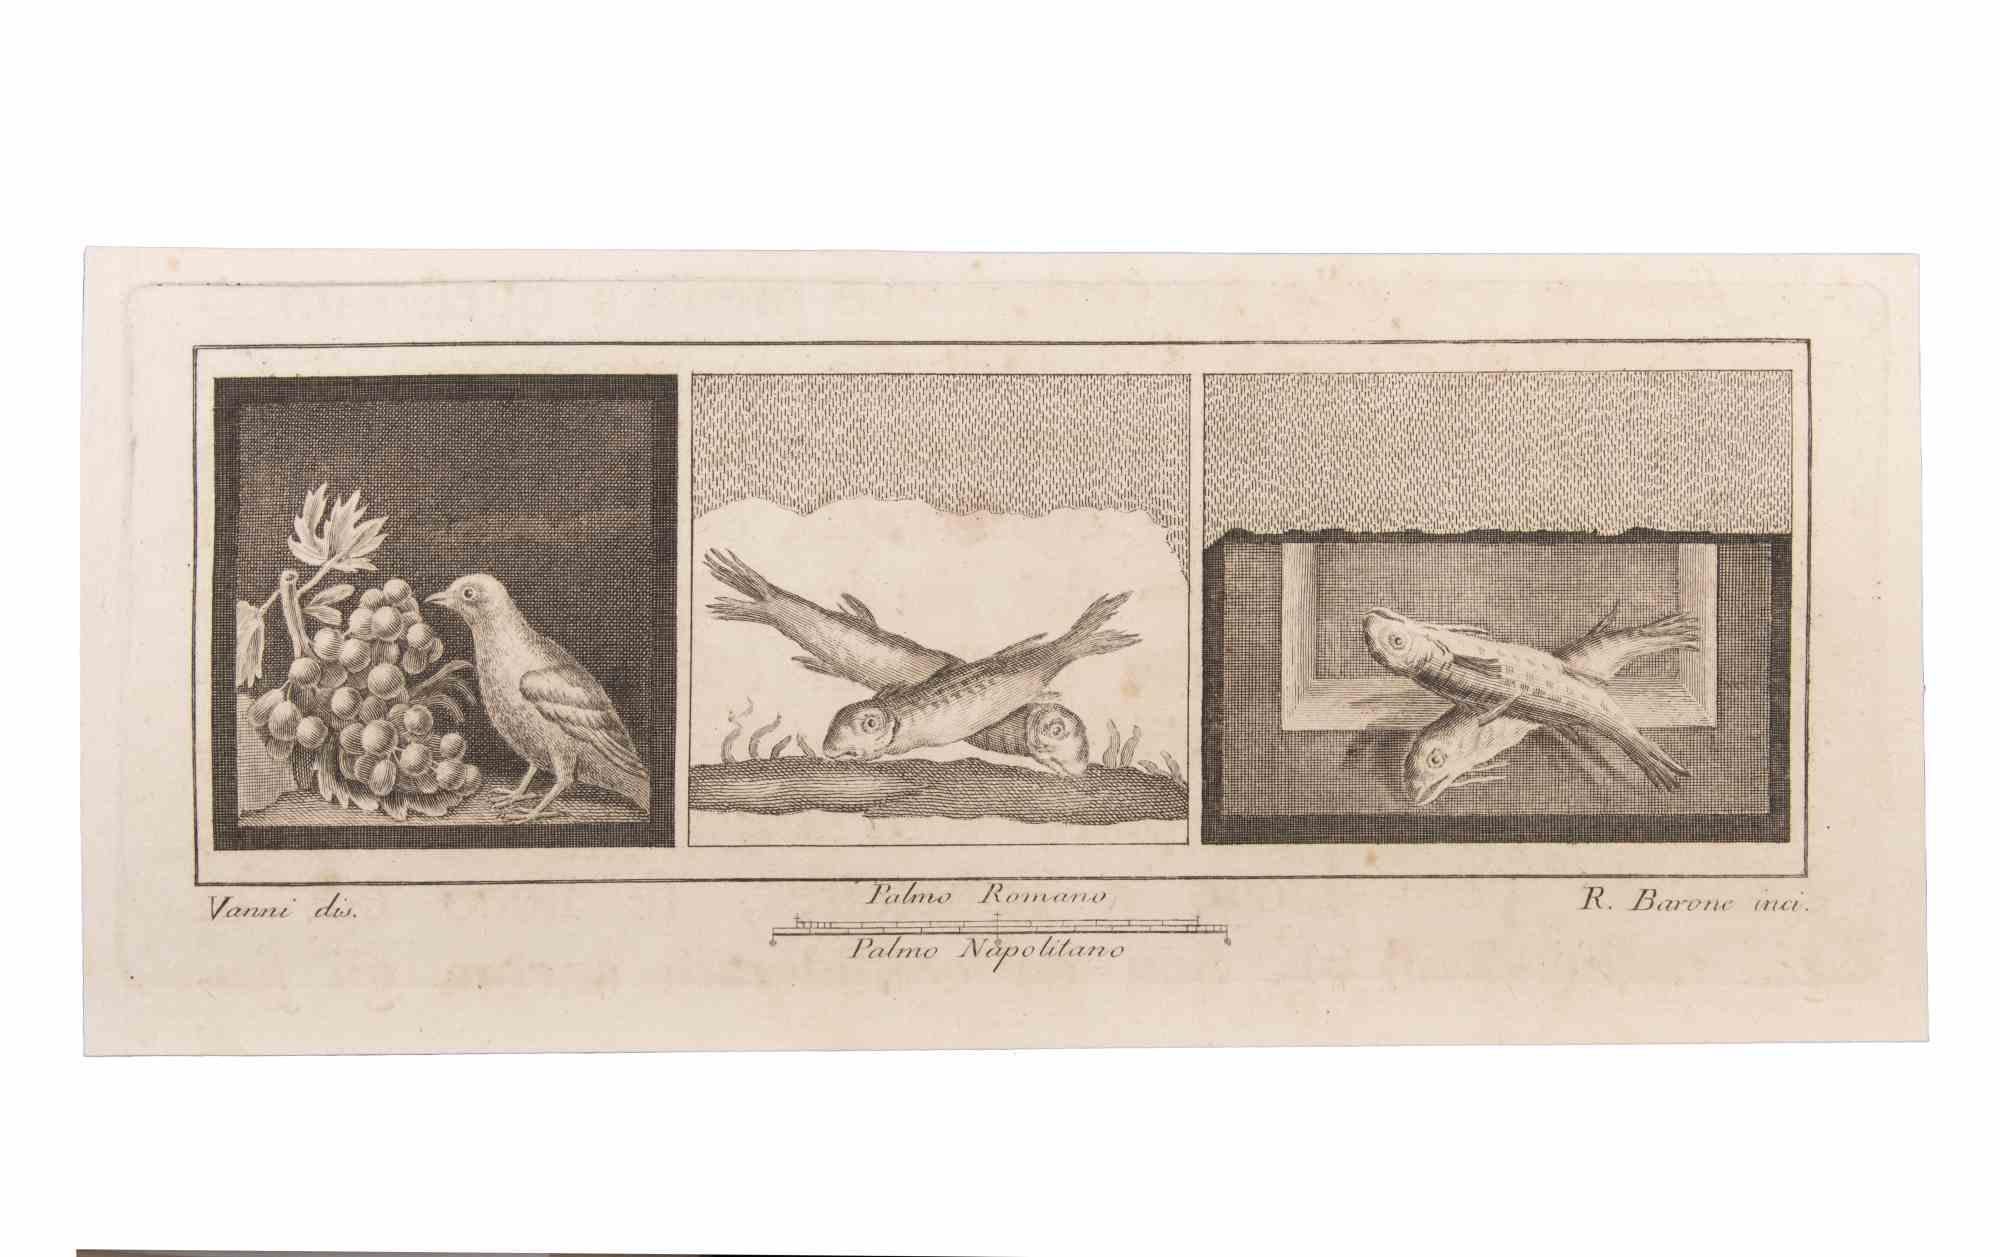 Décoration avec des animaux est une gravure réalisée par Raffaele Barone (18e siècle).

La gravure appartient à la suite d'estampes "Antiquités d'Herculanum exposées" (titre original : "Le Antichità di Ercolano Esposte"), un volume de huit gravures